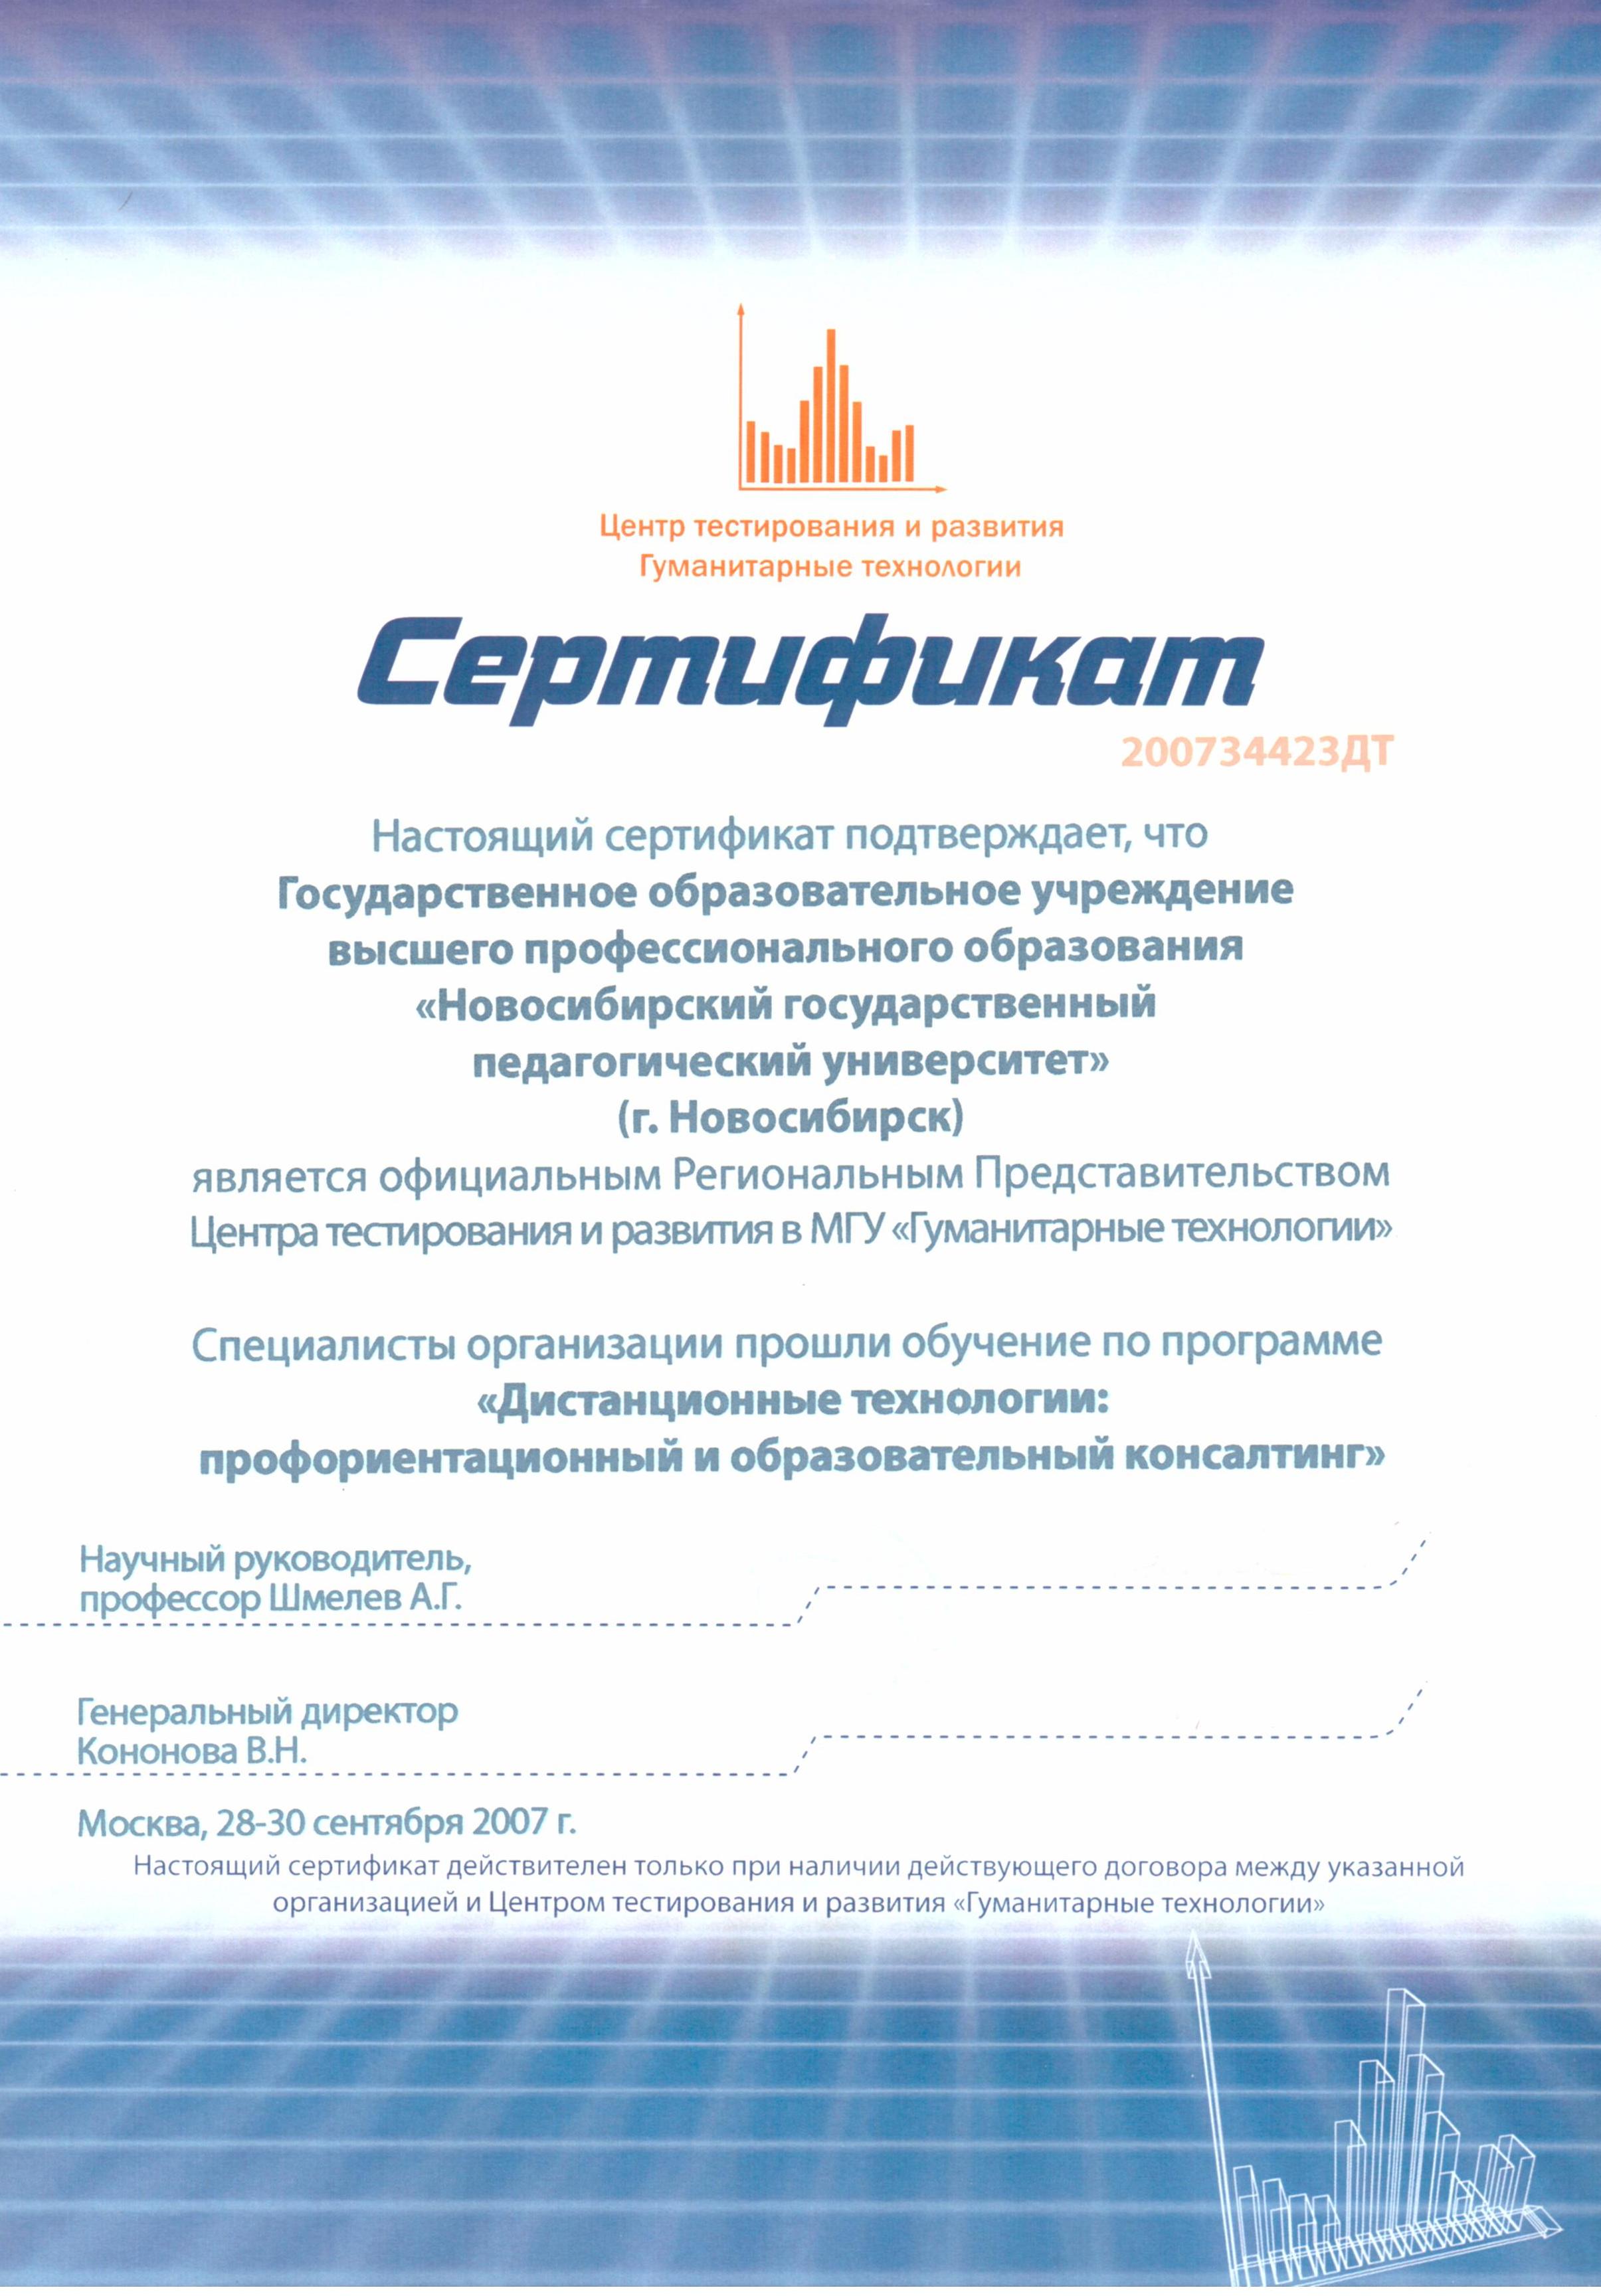 Сертификат: НГПУ является официальным Региональным Представительством центра тестирования развития в МГУ «Гуманитарные технологии»